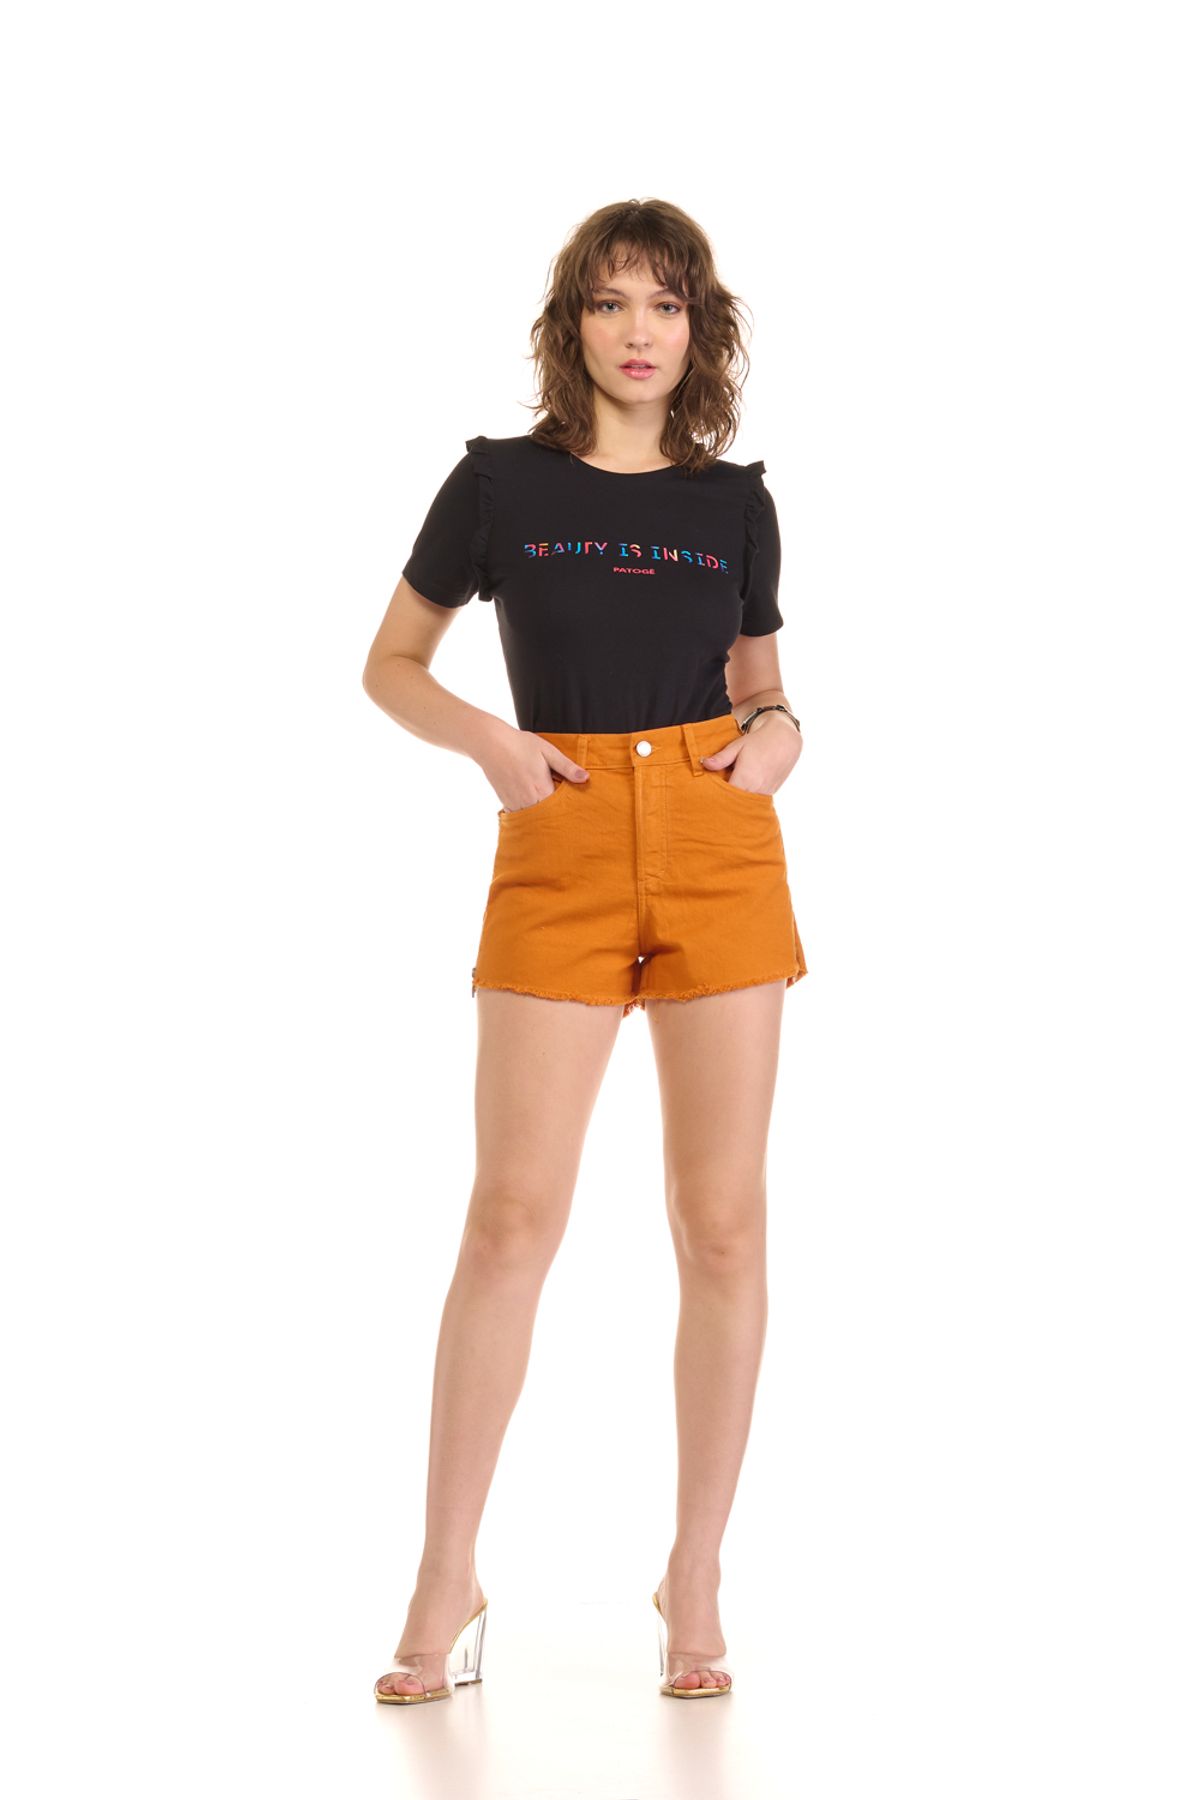 Short Patogê feminino jeans com aplicação de tachas coloridas cintura média  (G3) - patoge